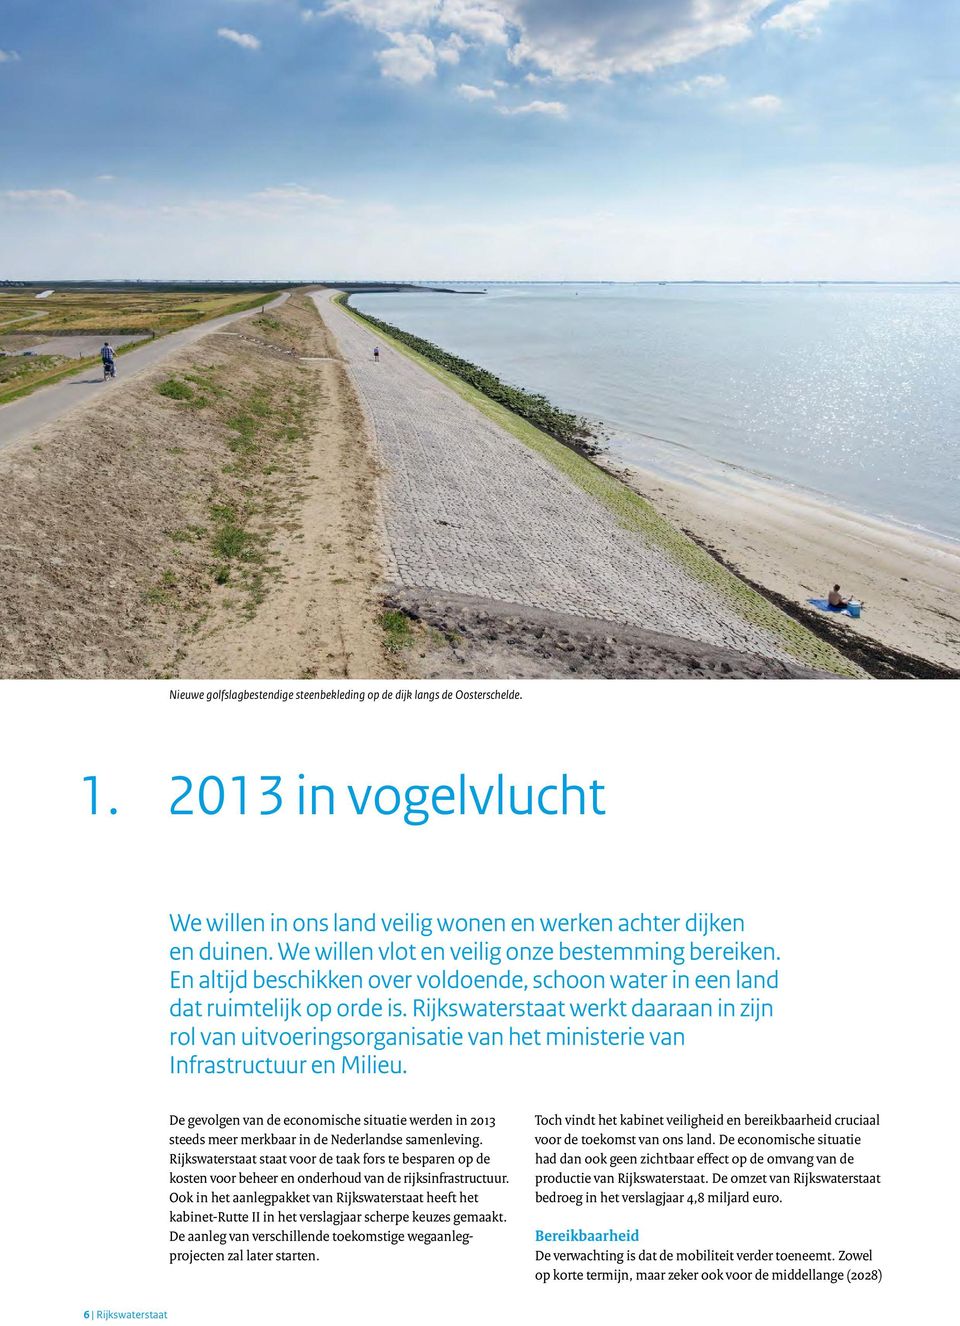 Rijkswaterstaat werkt daaraan in zijn rol van uitvoeringsorganisatie van het ministerie van Infrastructuur en Milieu.